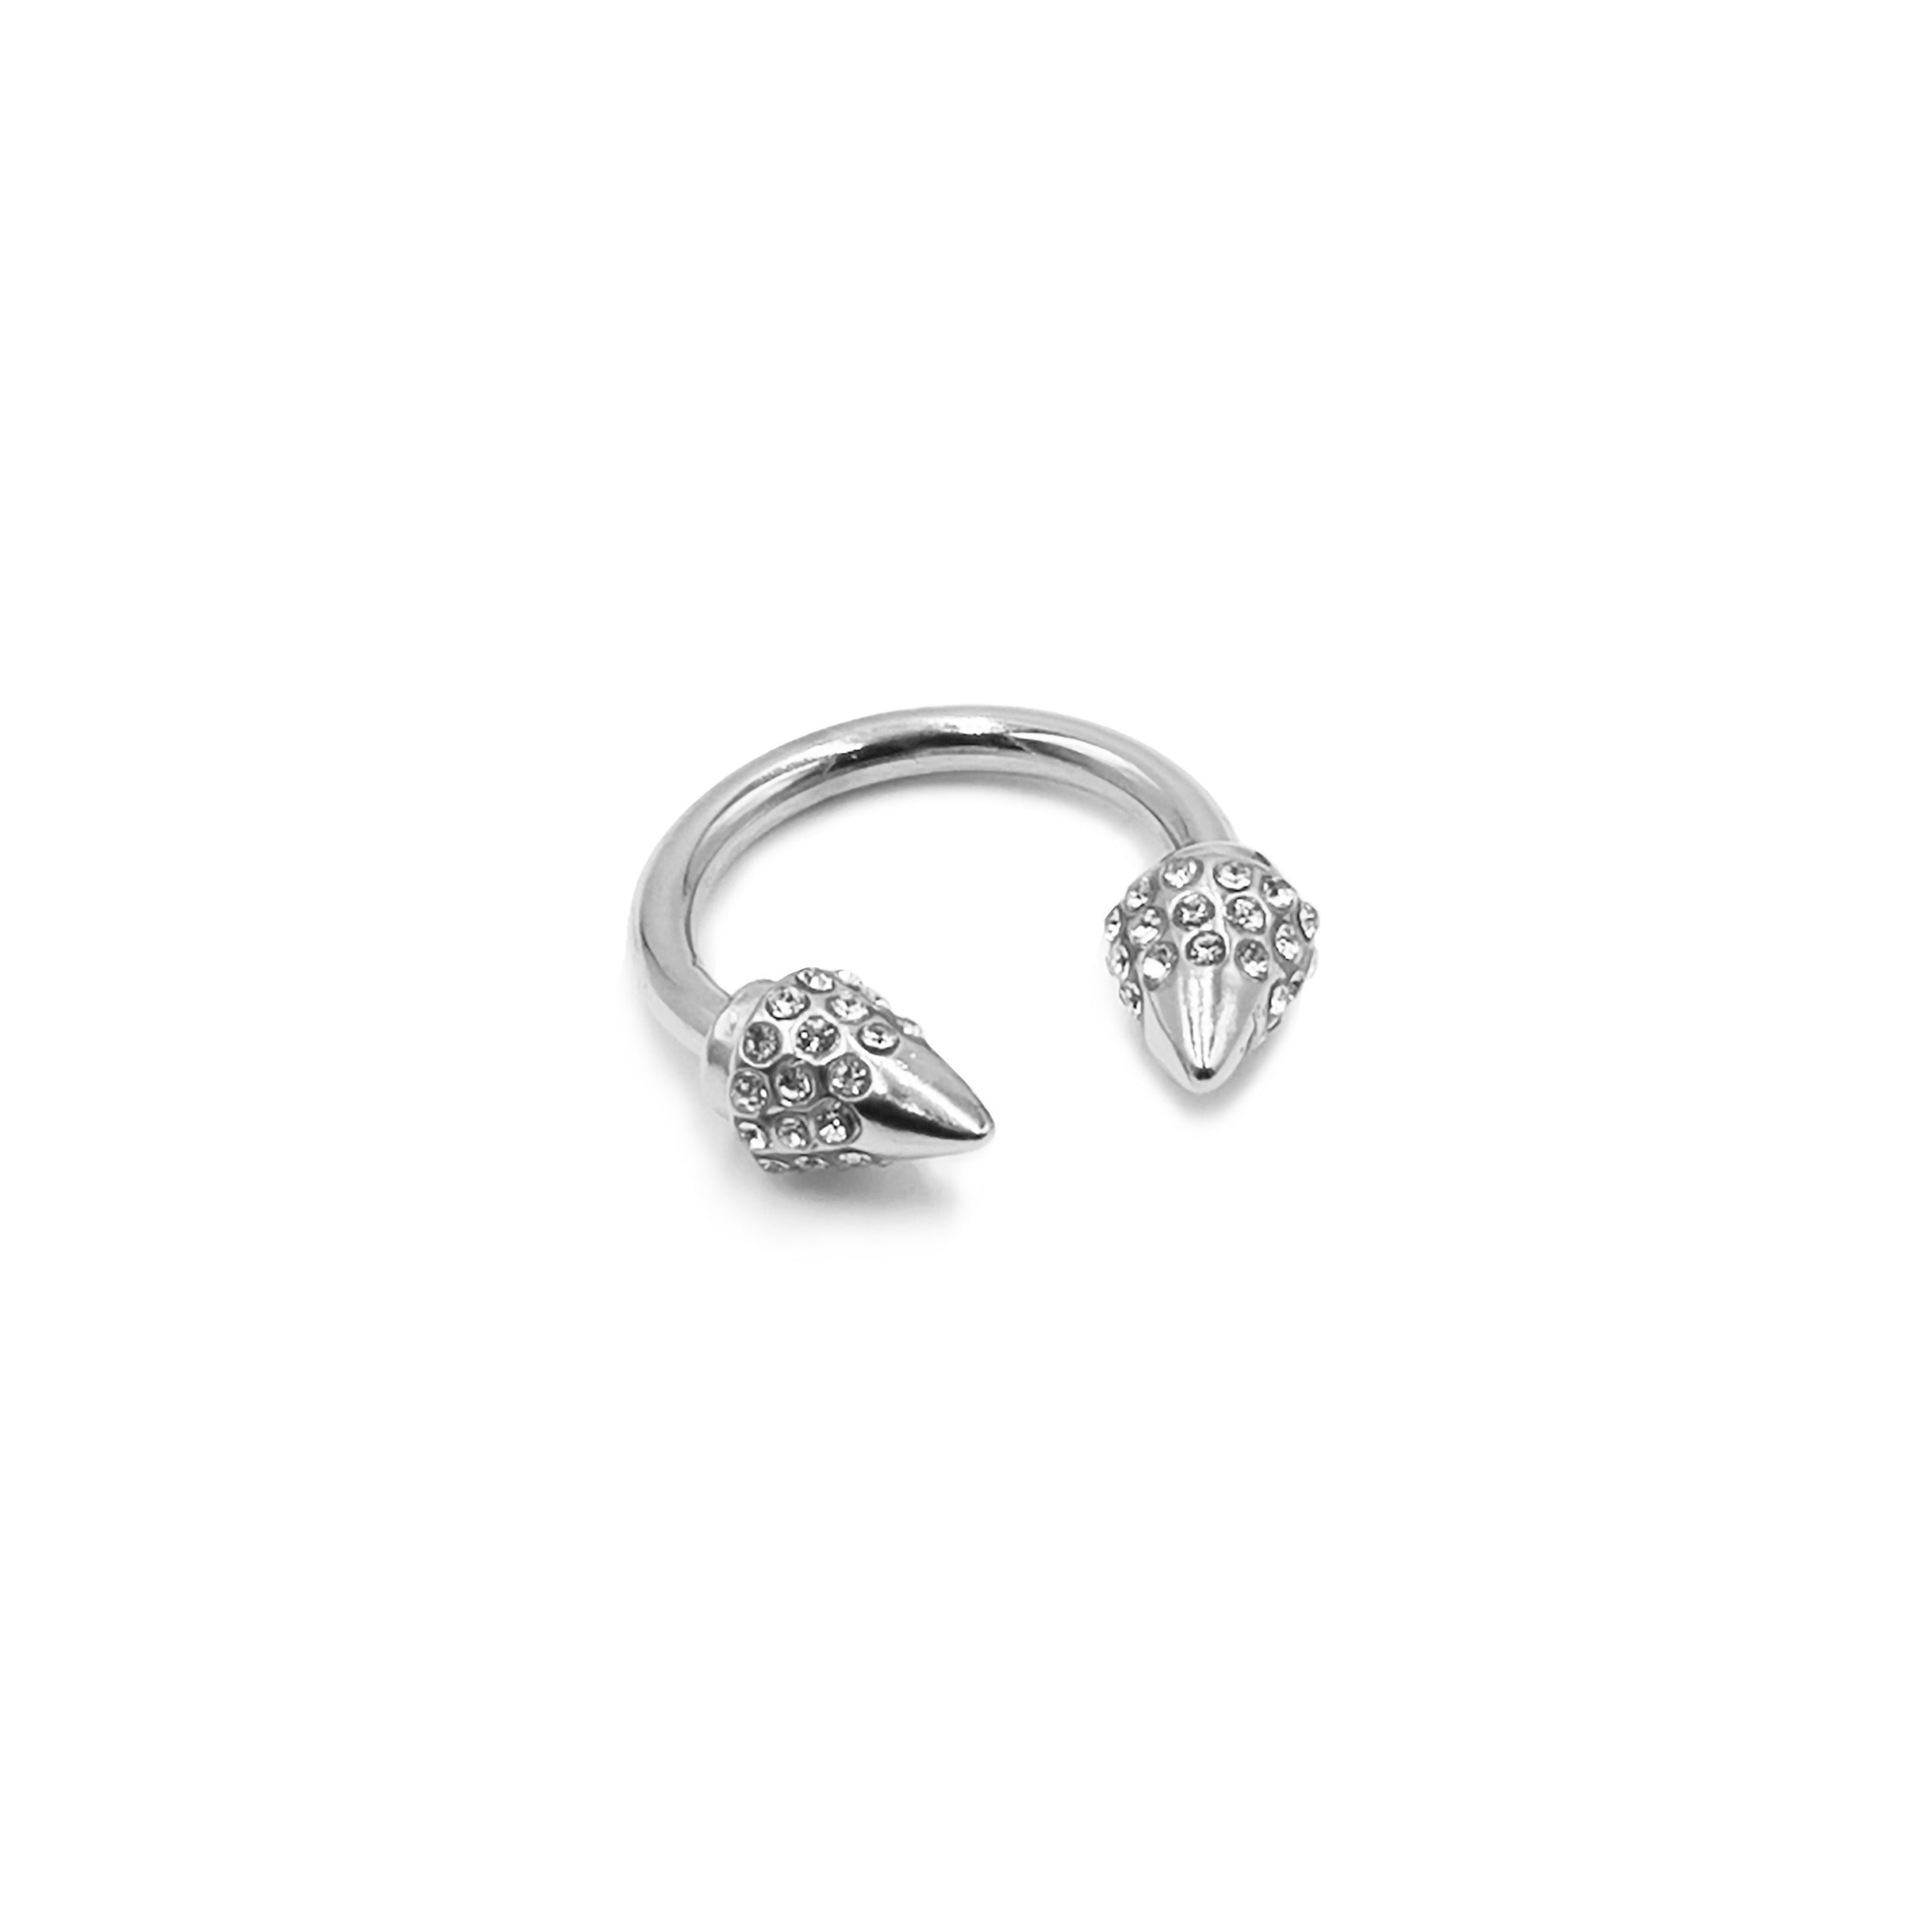 Collezione Spike - Anello in argento Bling, gioielli di design per uomini e donne